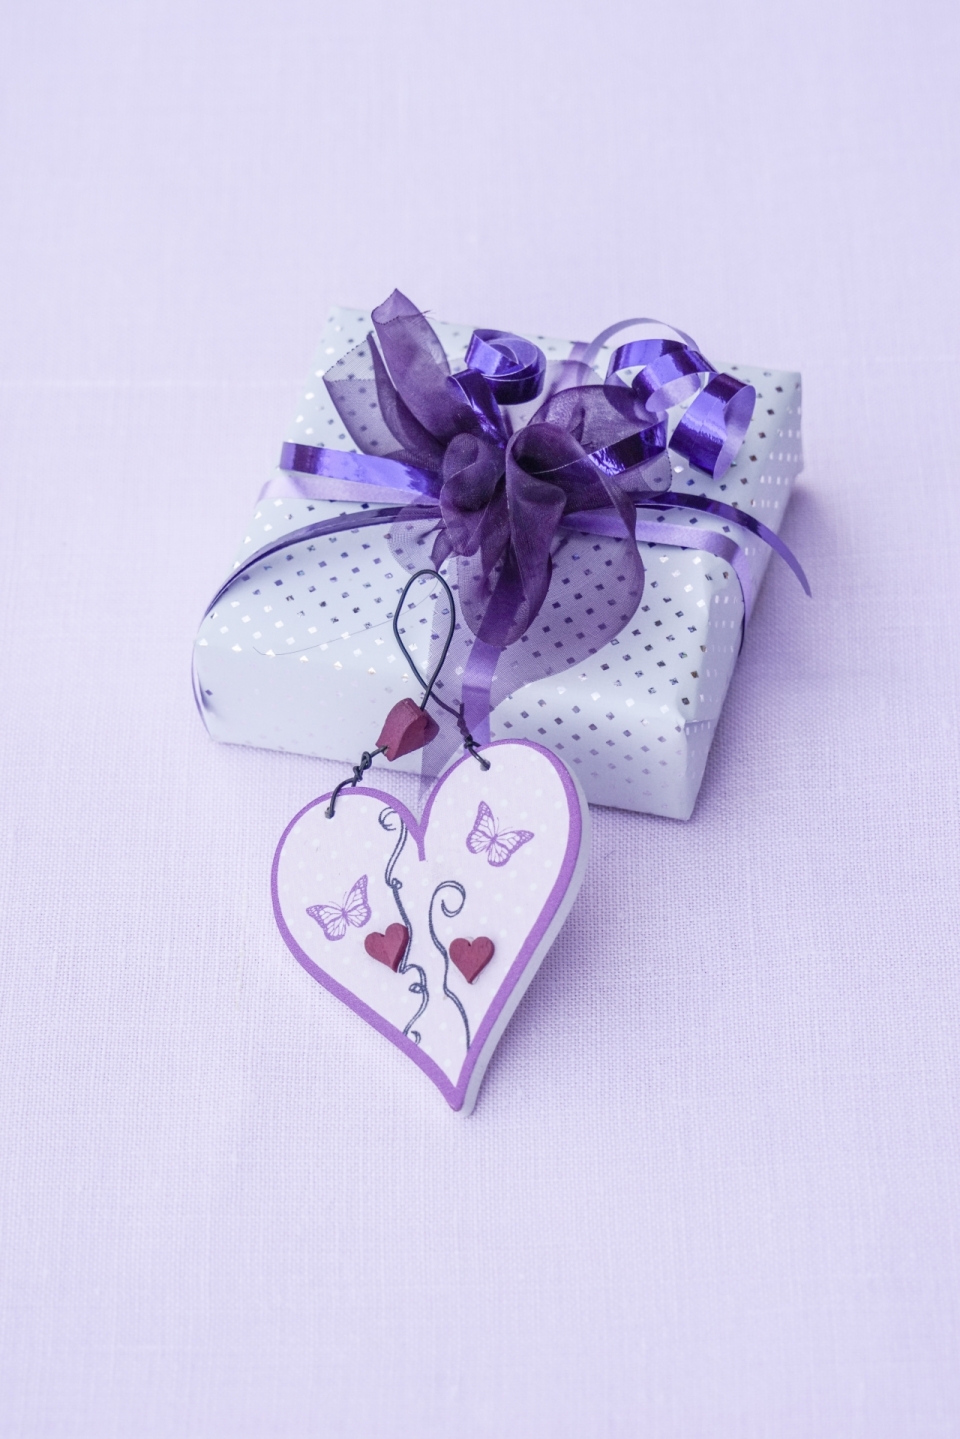 桌面上紫色礼盒精致包装摆拍